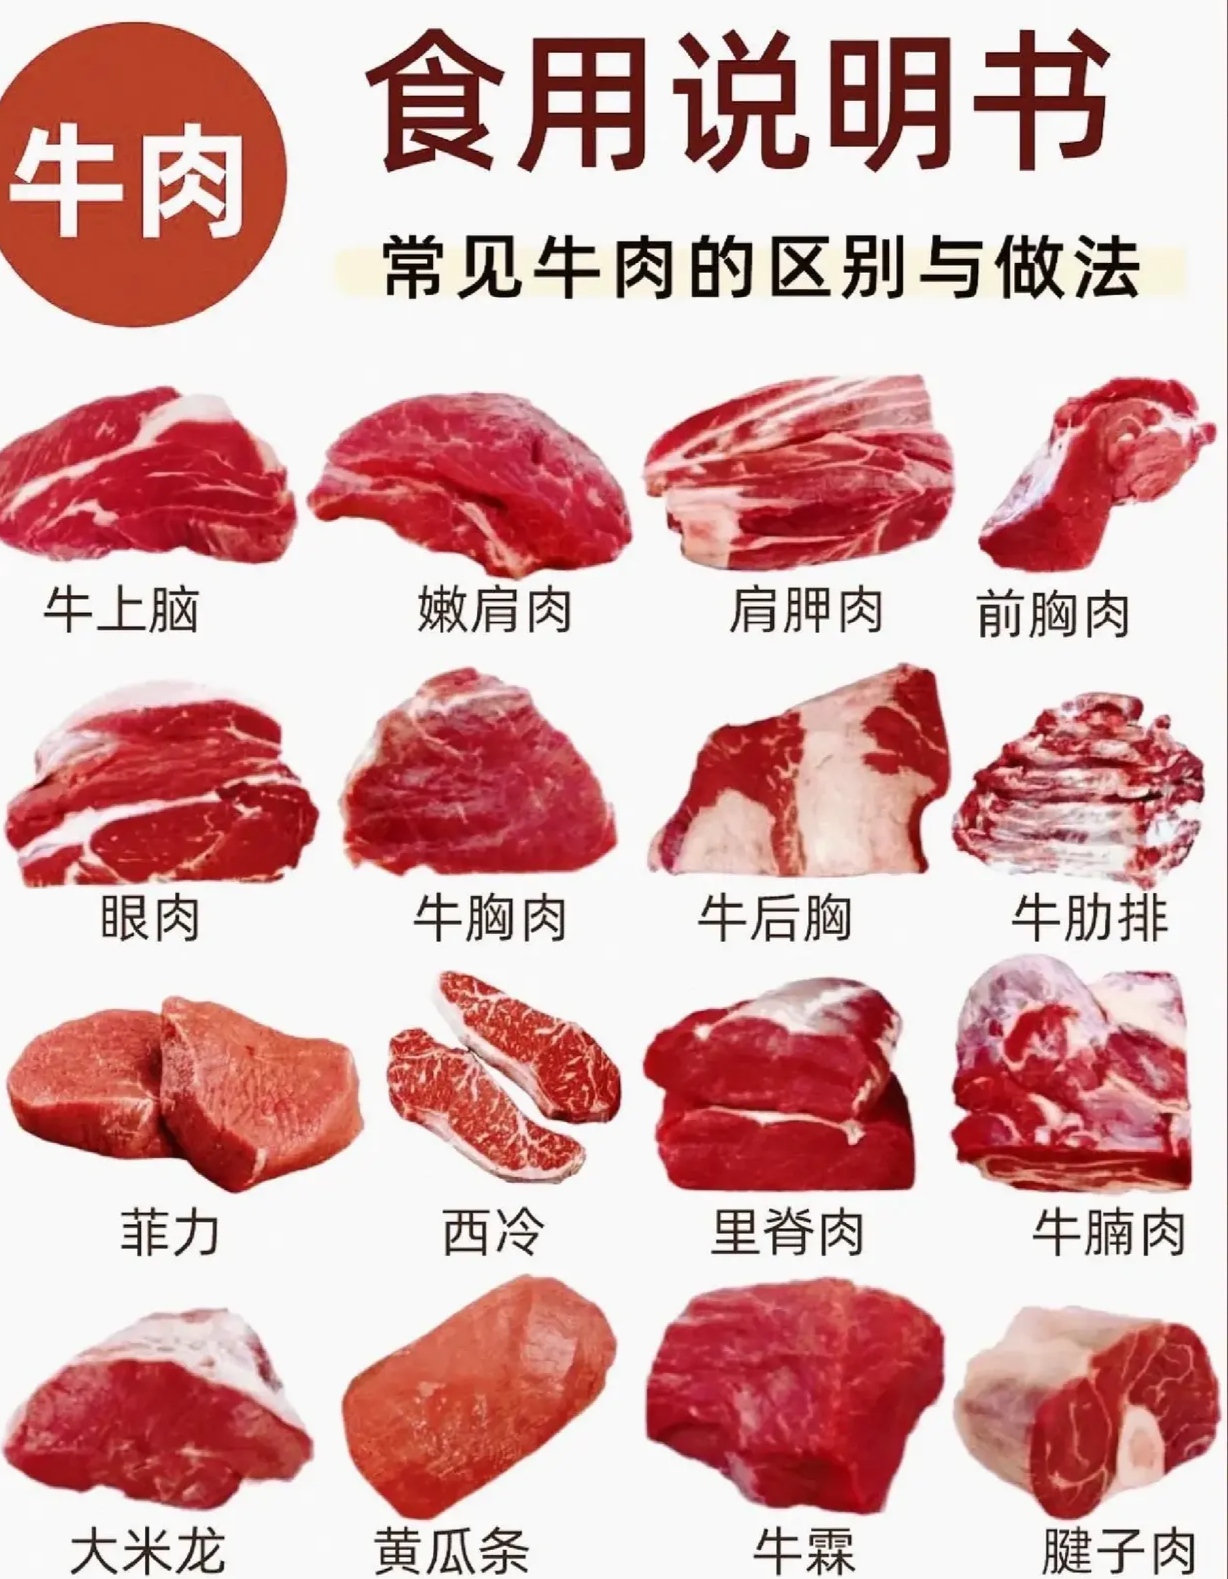 21个牛肉部位,大卸八块之常见16个部位食用说明